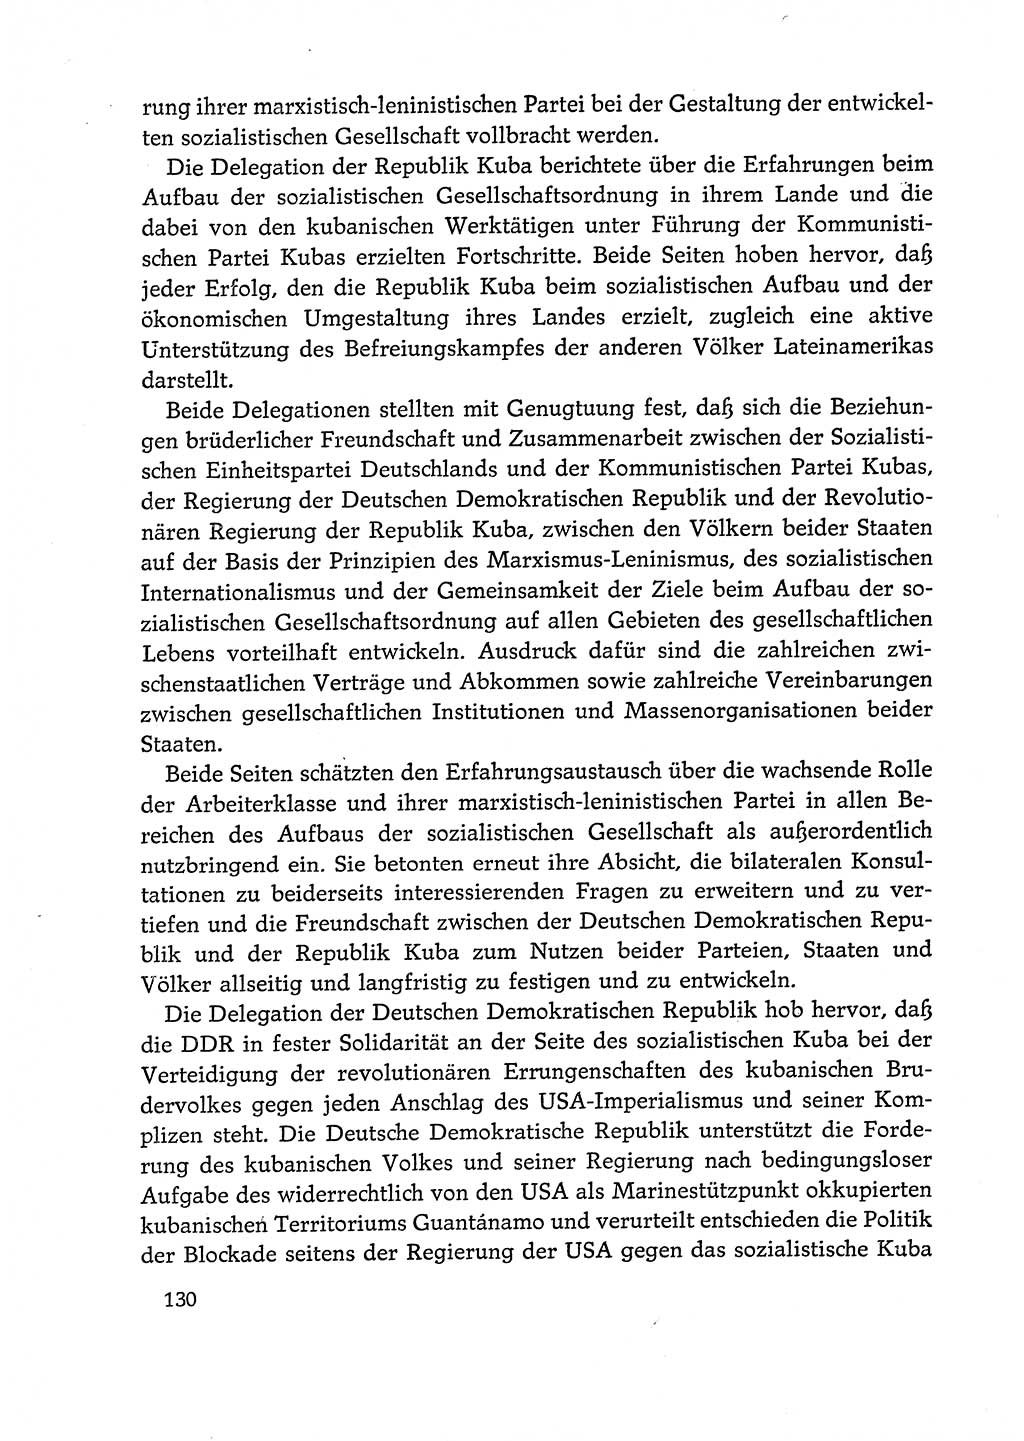 Dokumente der Sozialistischen Einheitspartei Deutschlands (SED) [Deutsche Demokratische Republik (DDR)] 1972-1973, Seite 130 (Dok. SED DDR 1972-1973, S. 130)